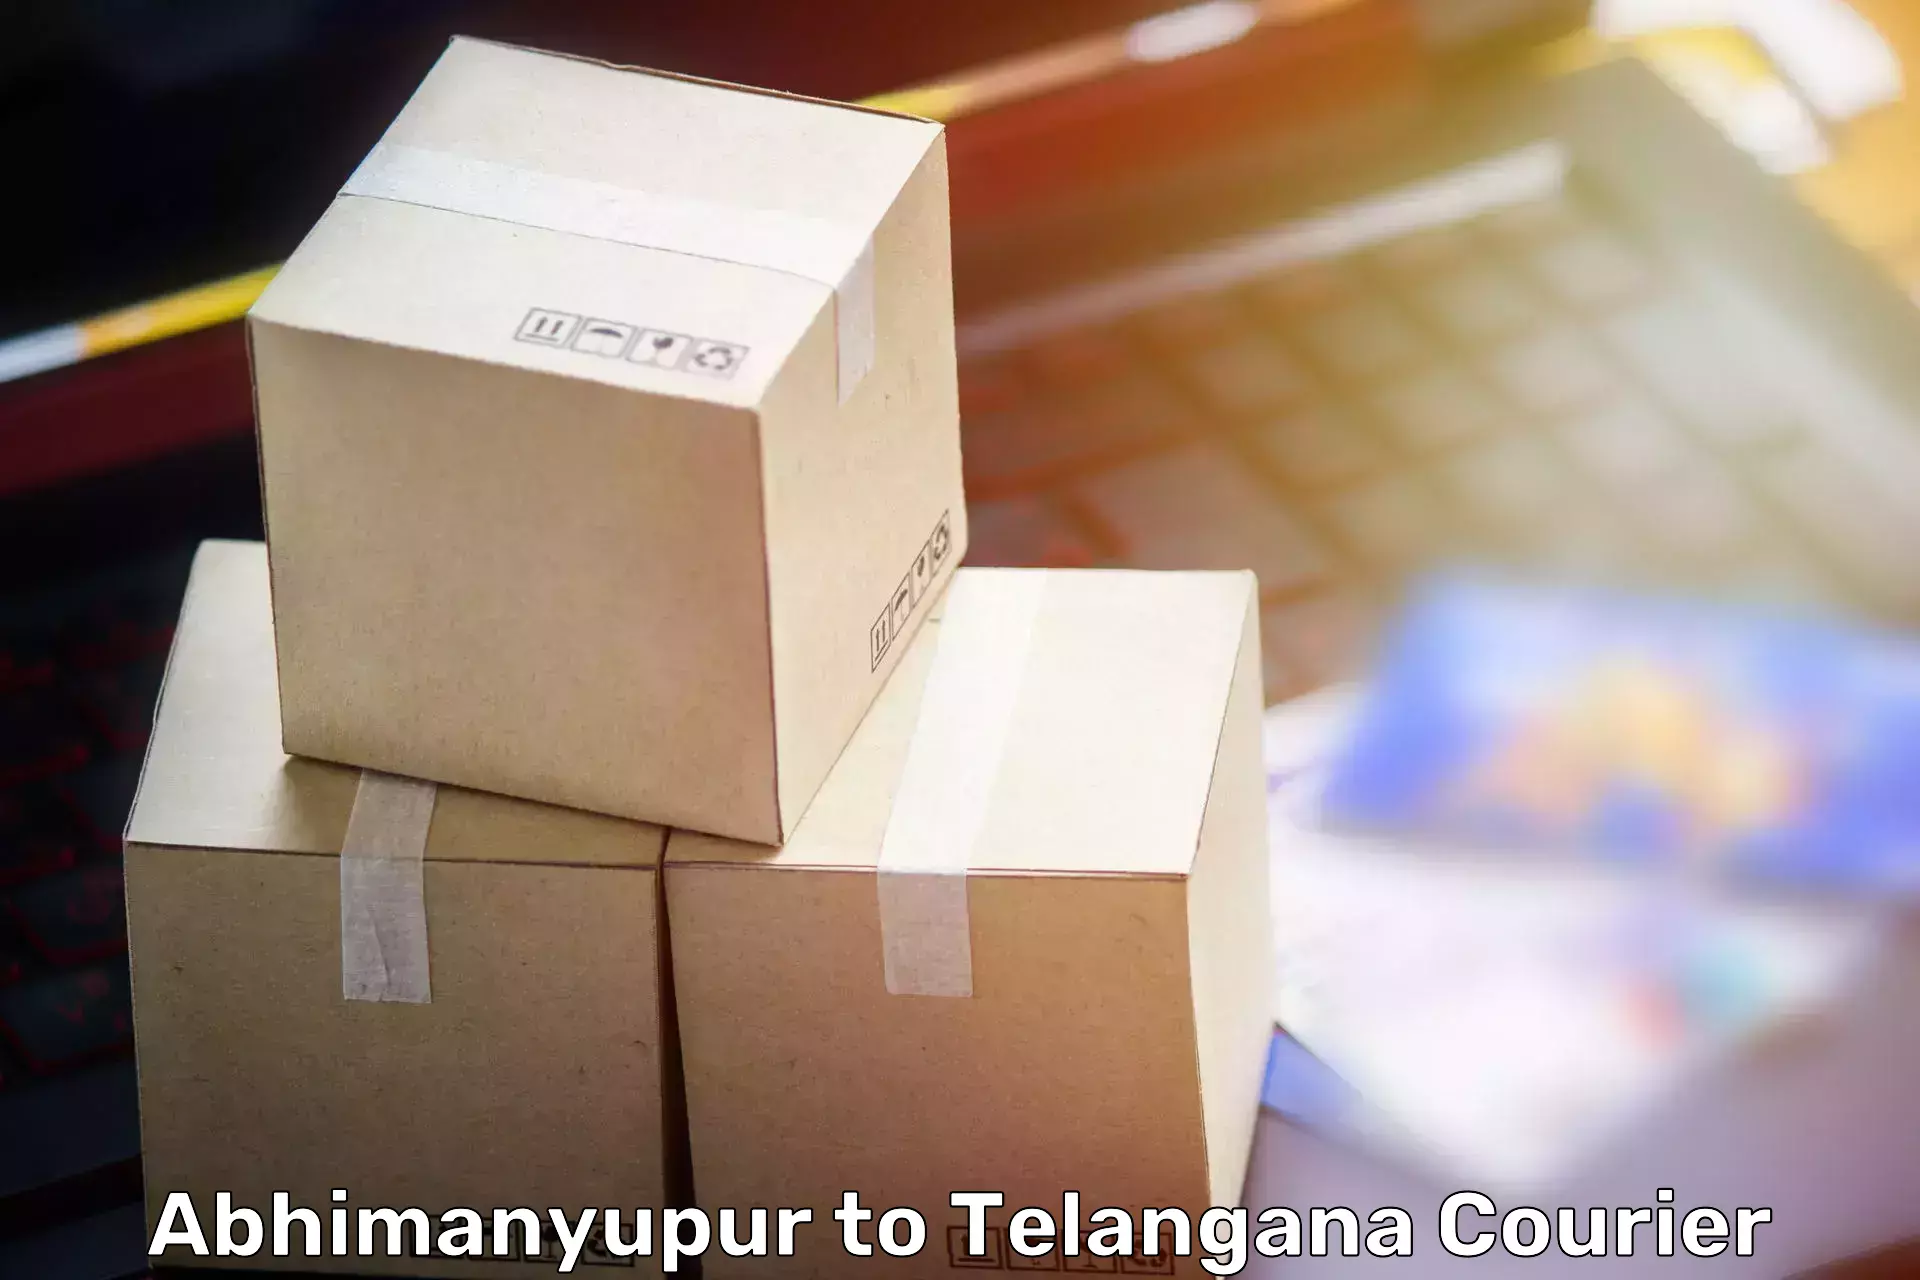 Home moving experts Abhimanyupur to Narsampet